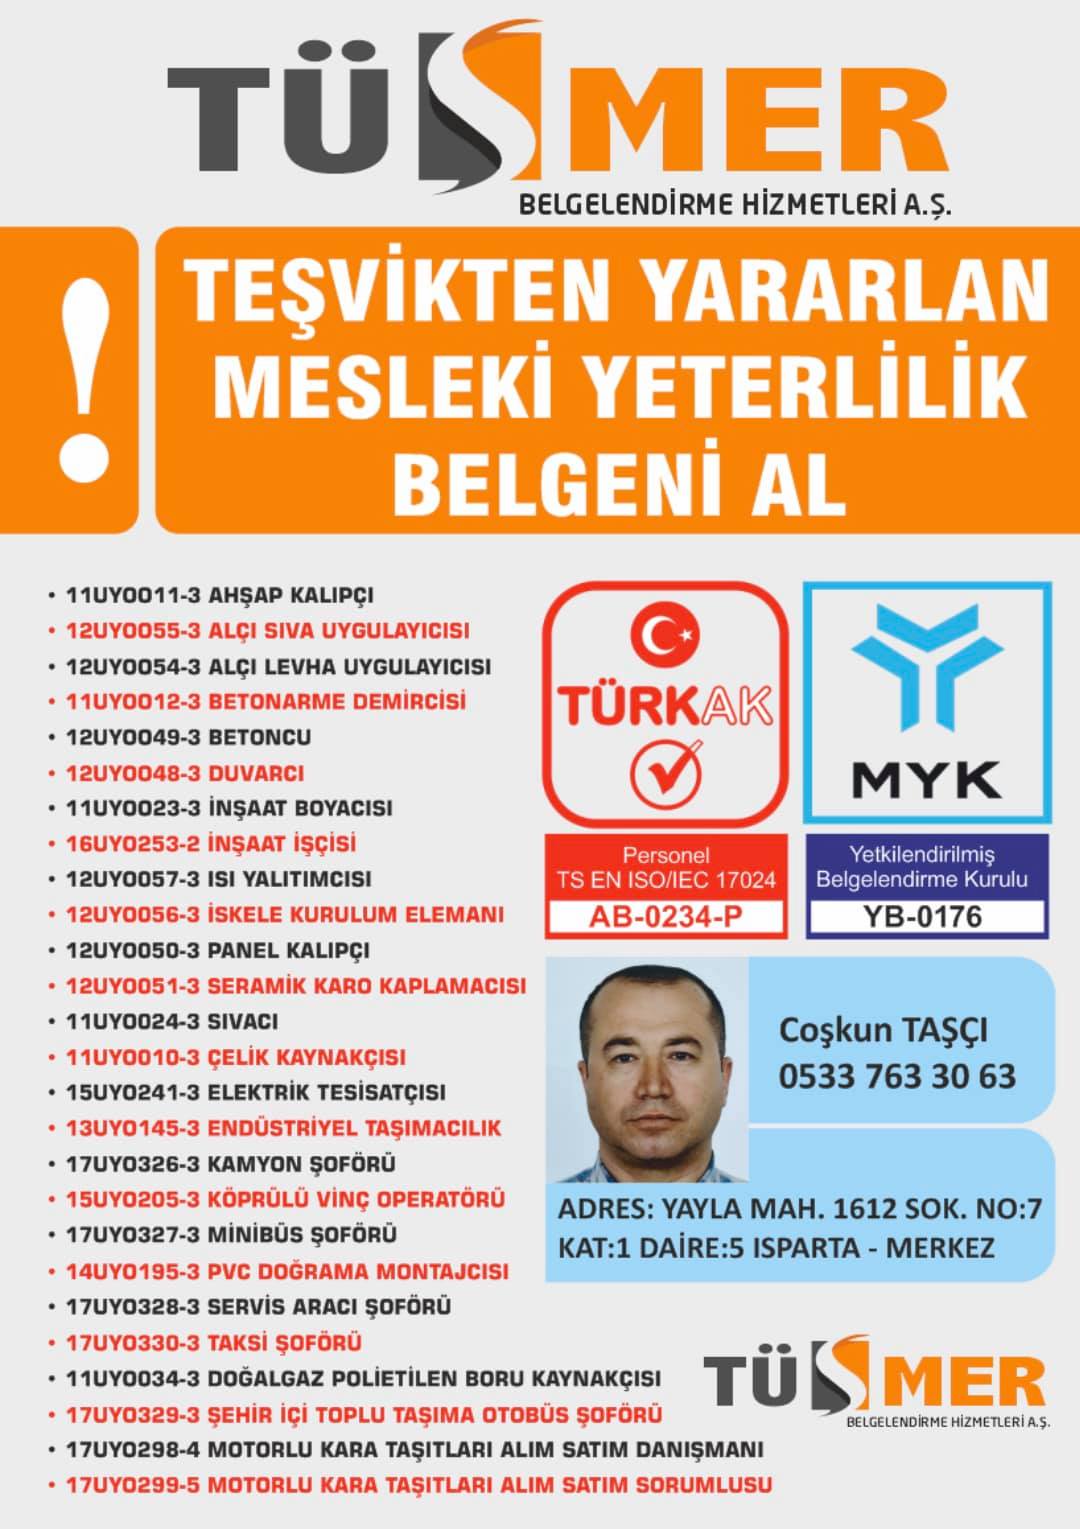 MYK MESLEKİ YETERLİLİK BELGESİ MevlanaAtaşehir İstanbul